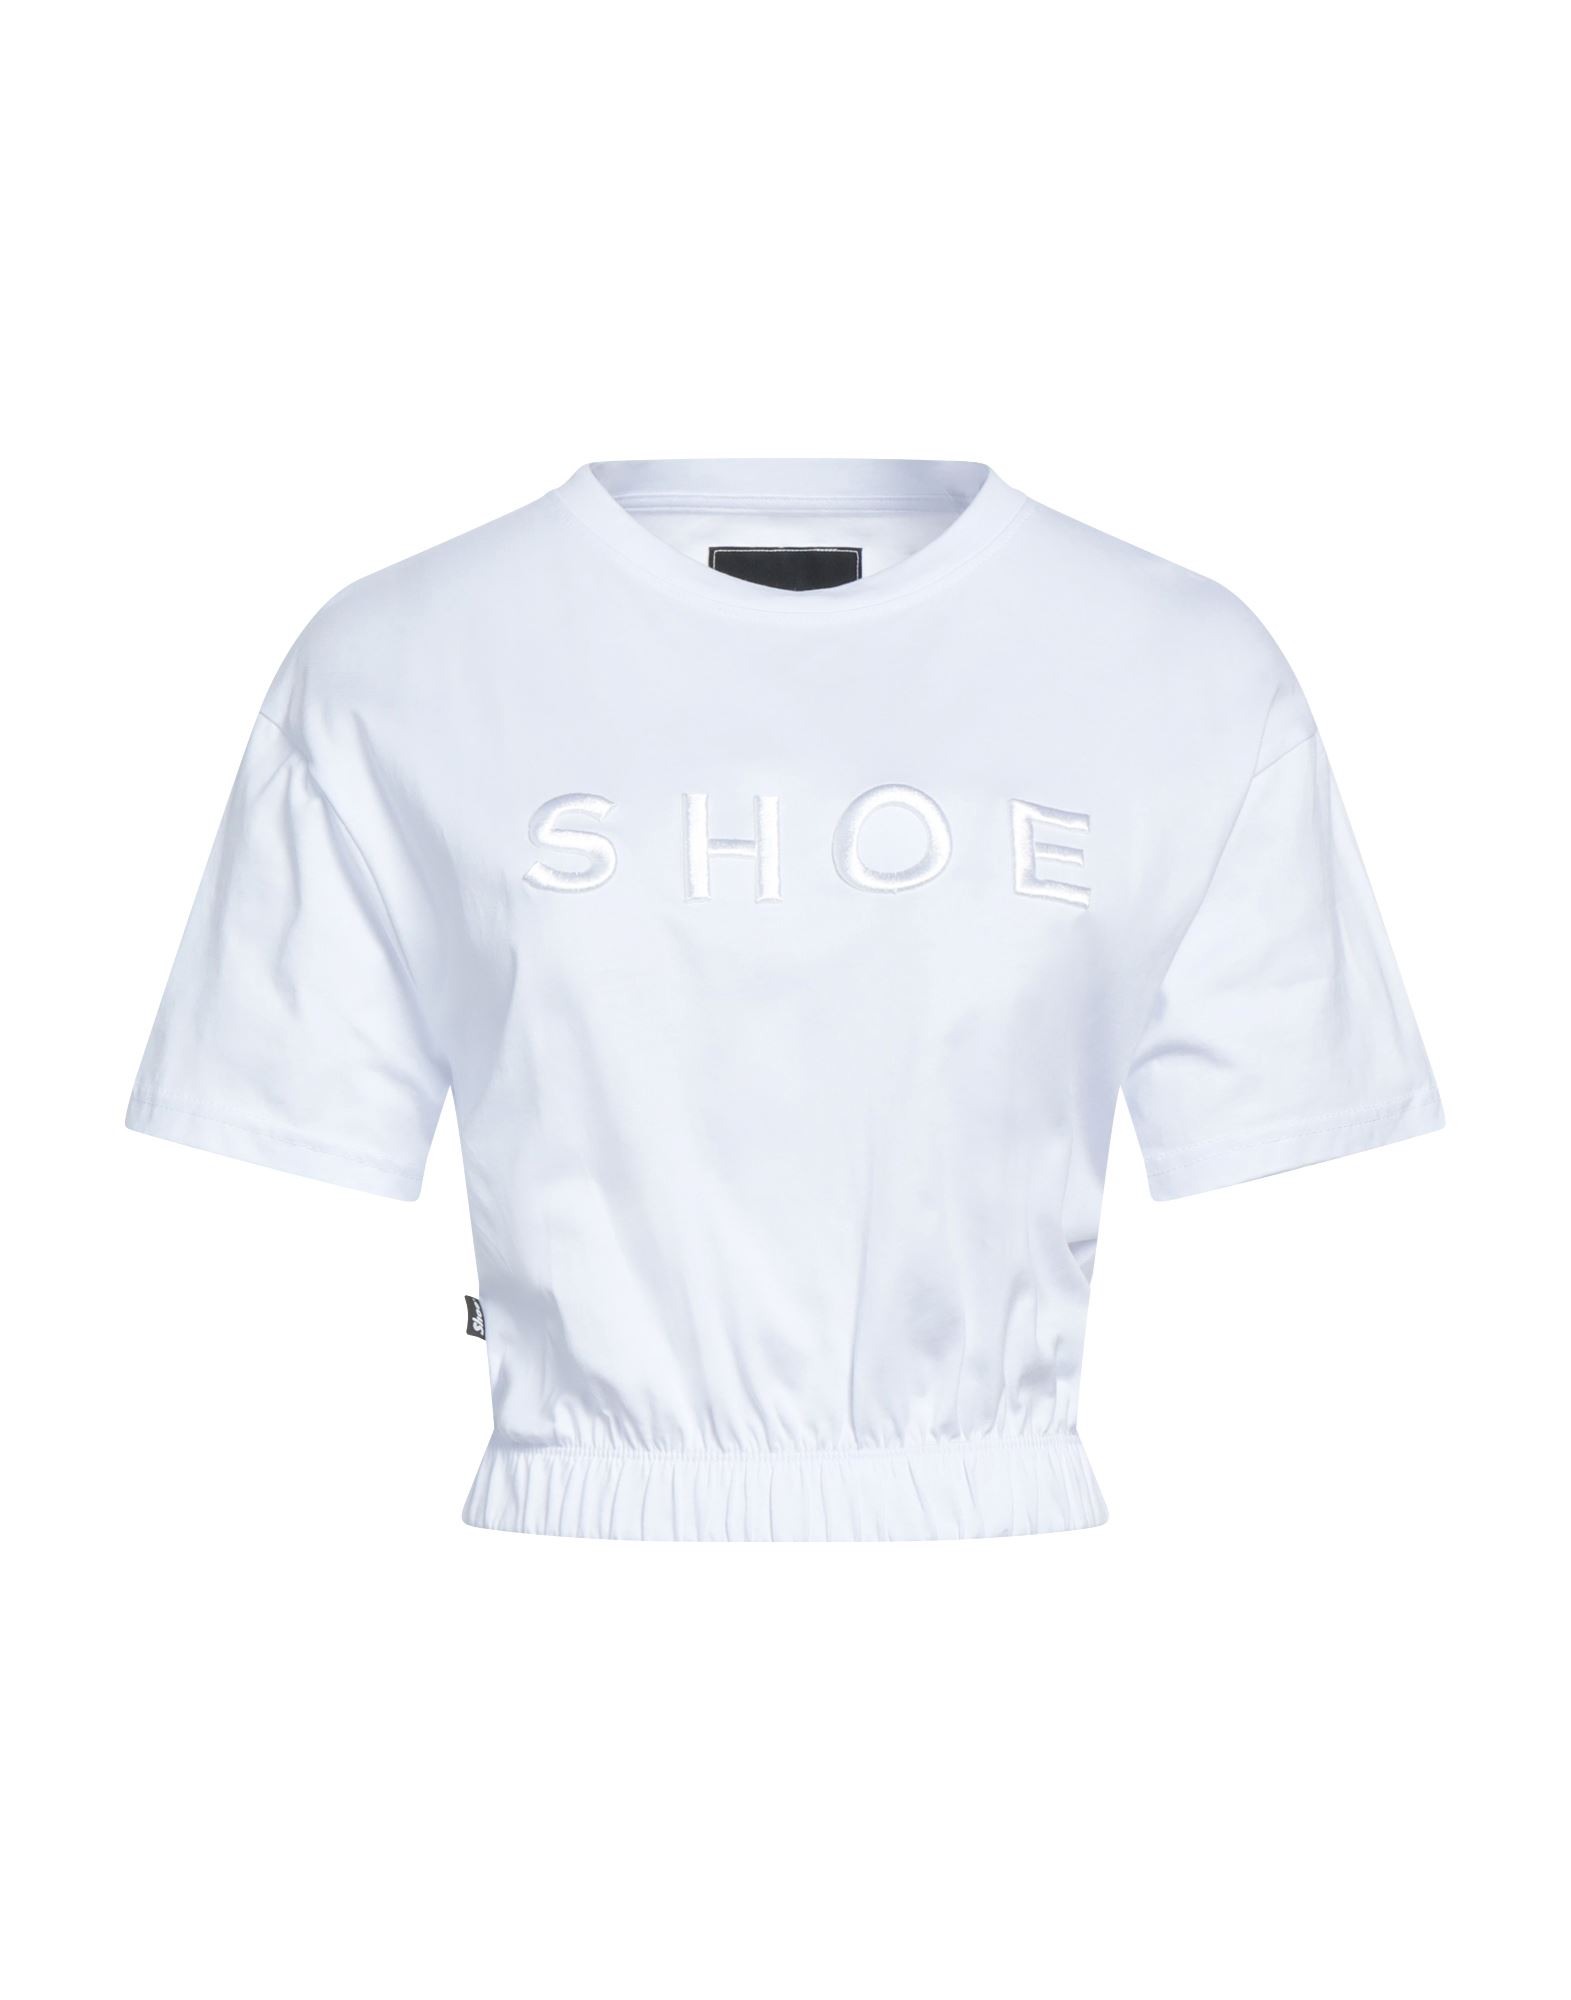 Shoe® Shoe Woman T-shirt White Size M Cotton